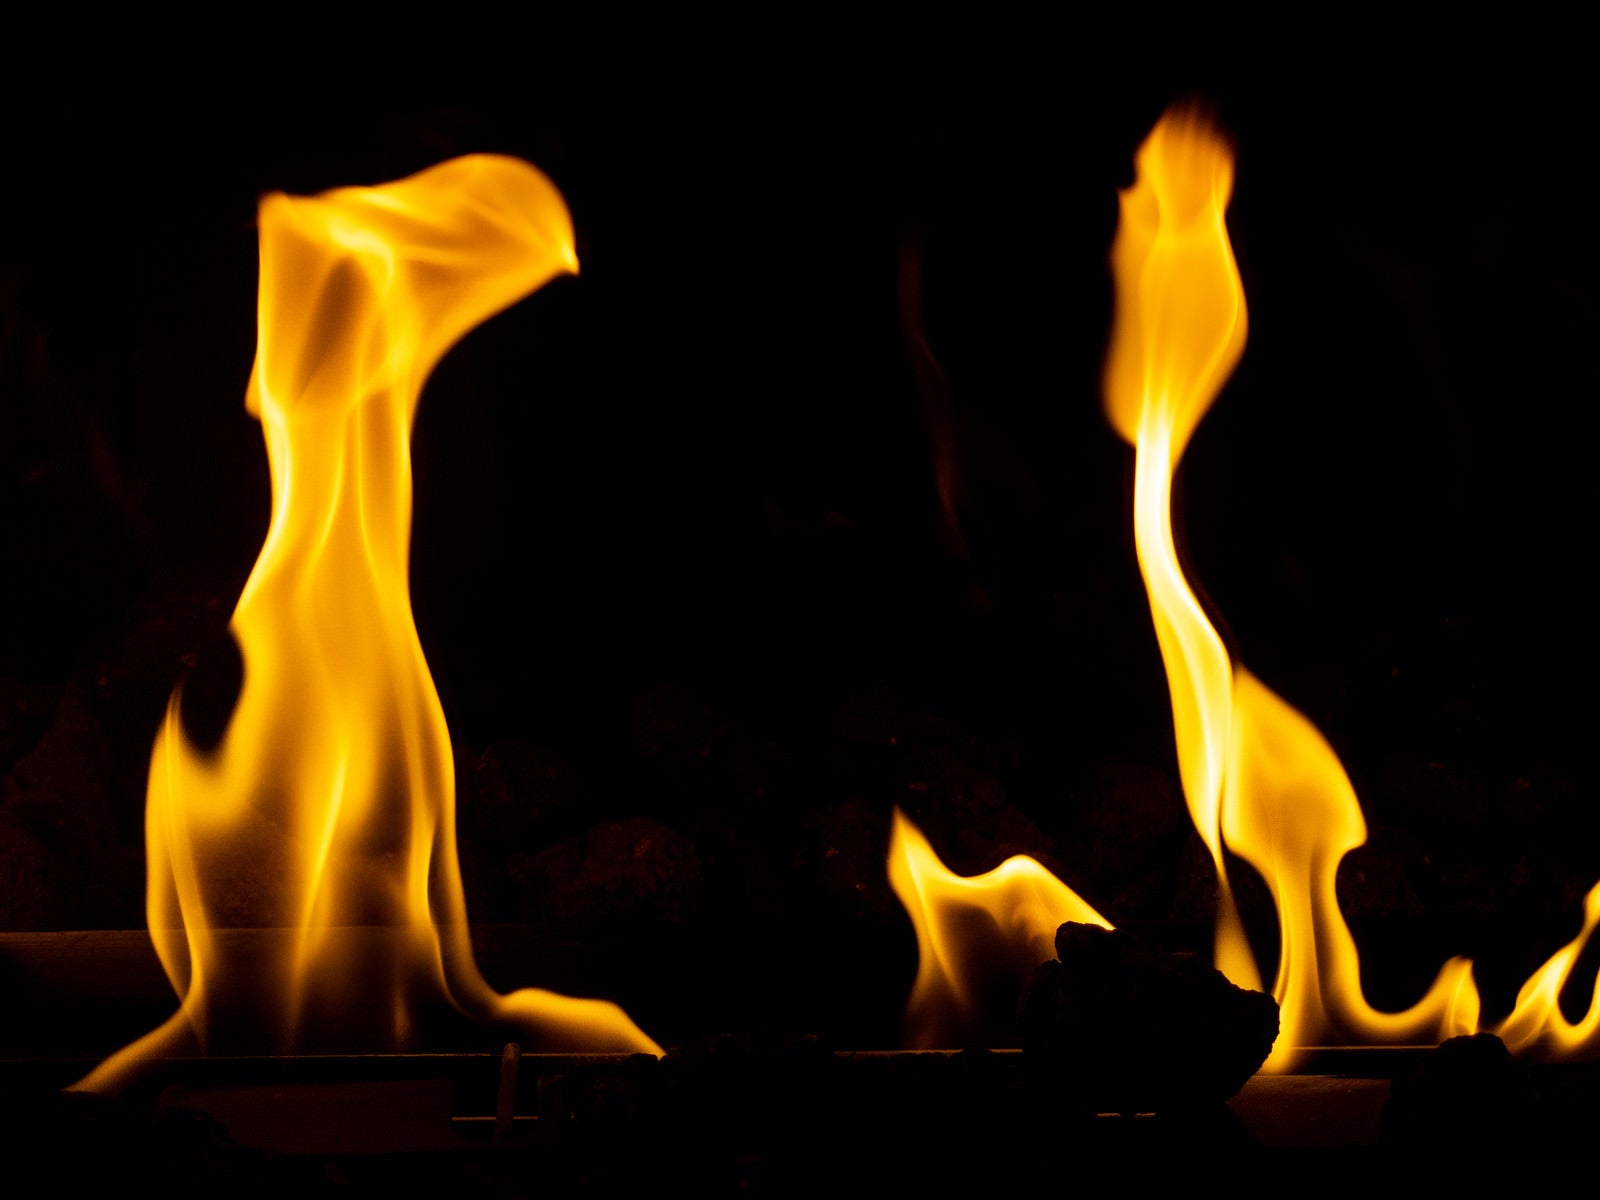 「めらめら暖かい暖炉の炎」の写真